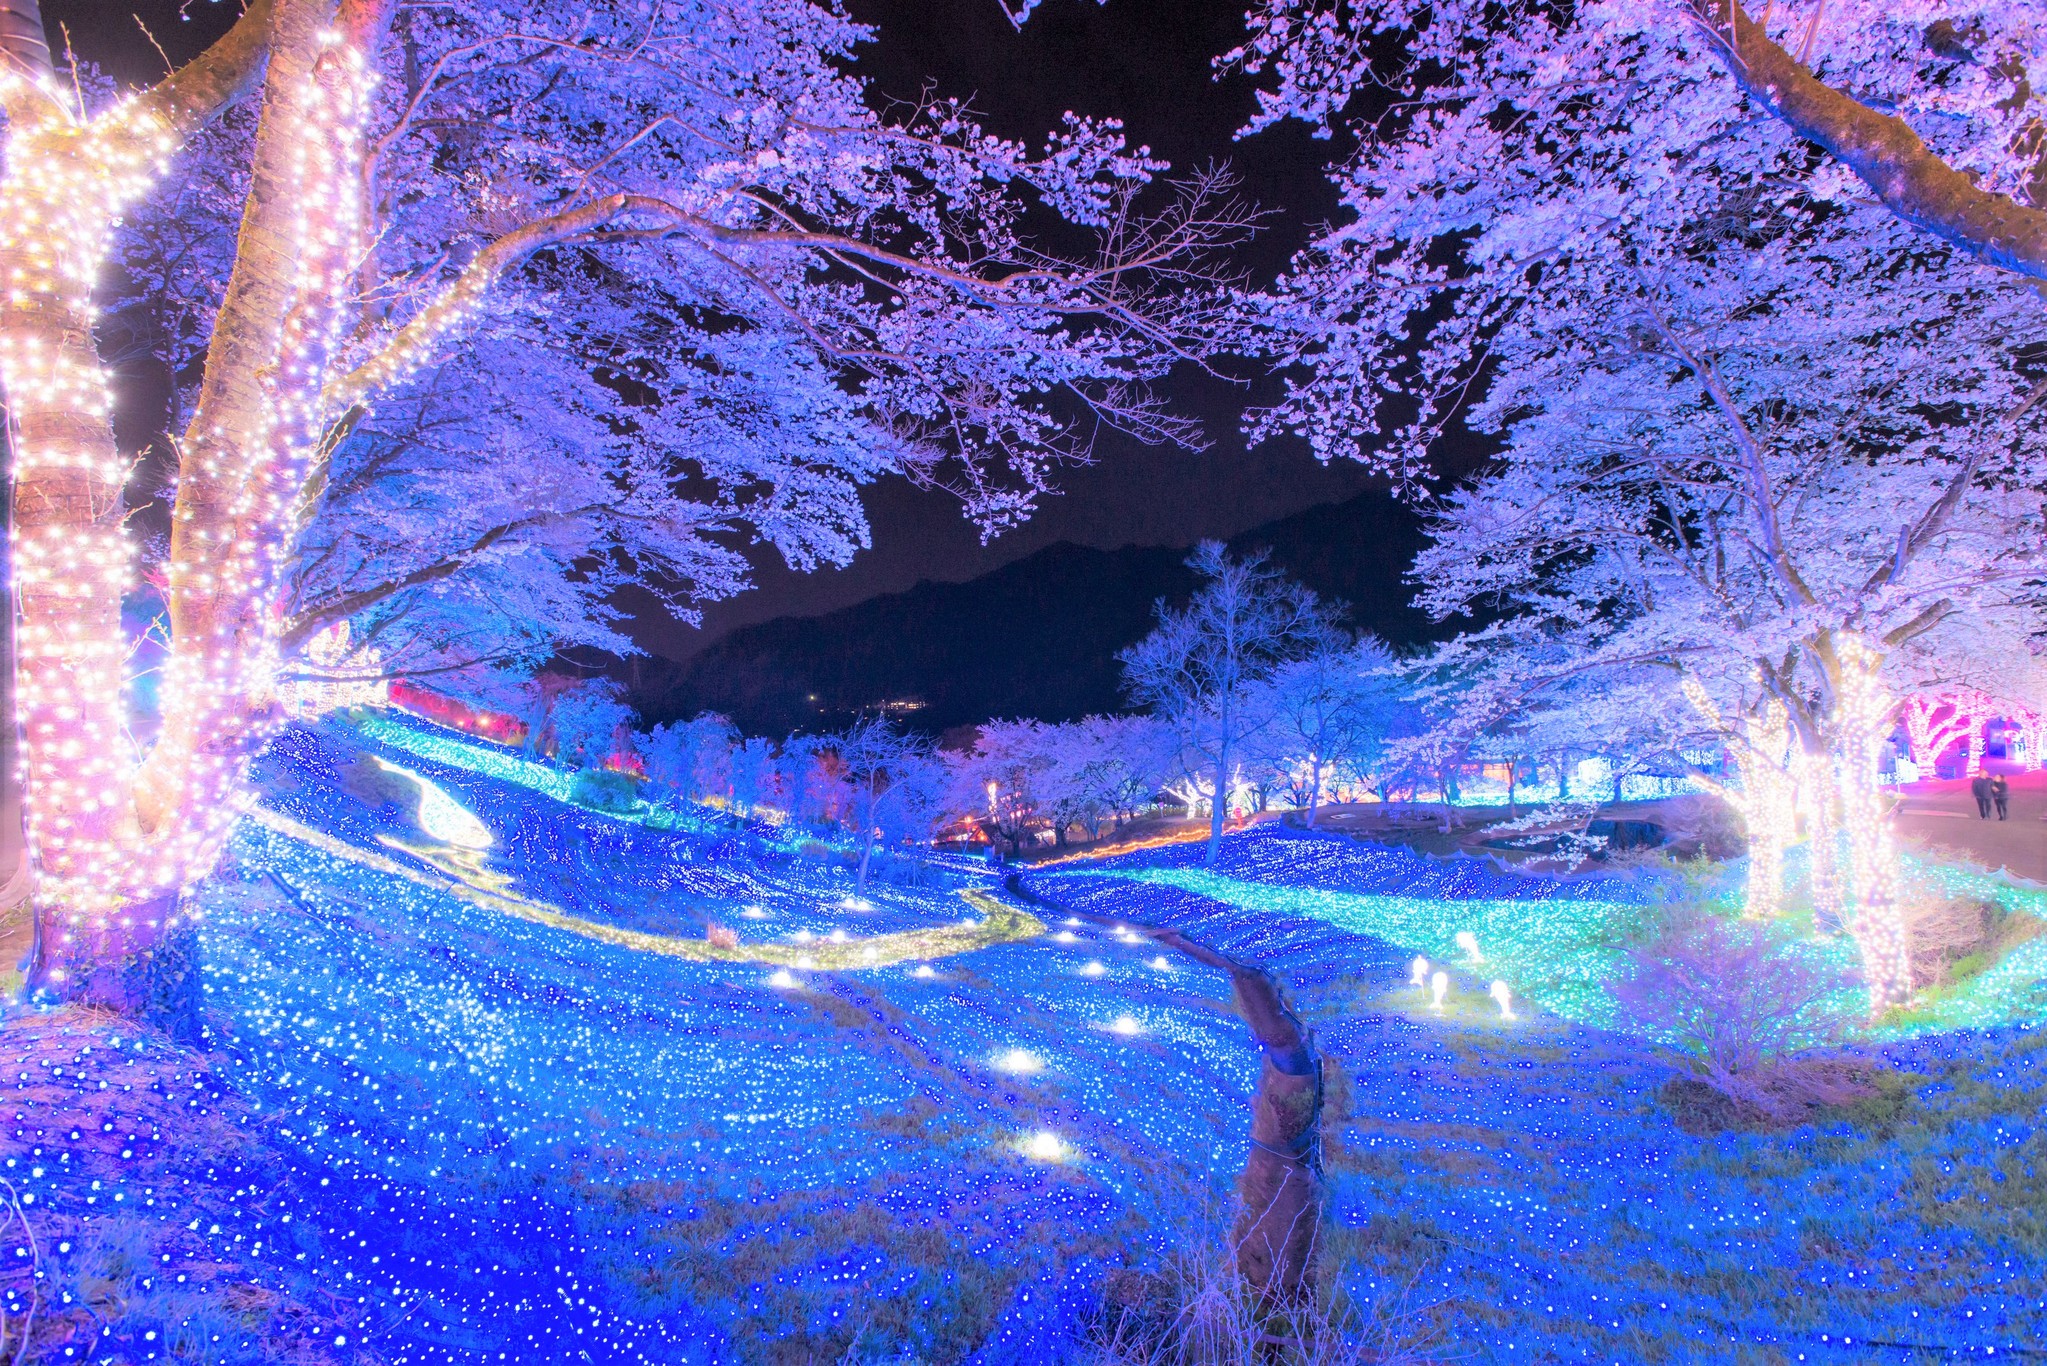 関東最大級 2 500本が昼夜咲き誇る 桜の名所 さがみ湖桜まつり 3月21日より開催 富士急行株式会社のプレスリリース